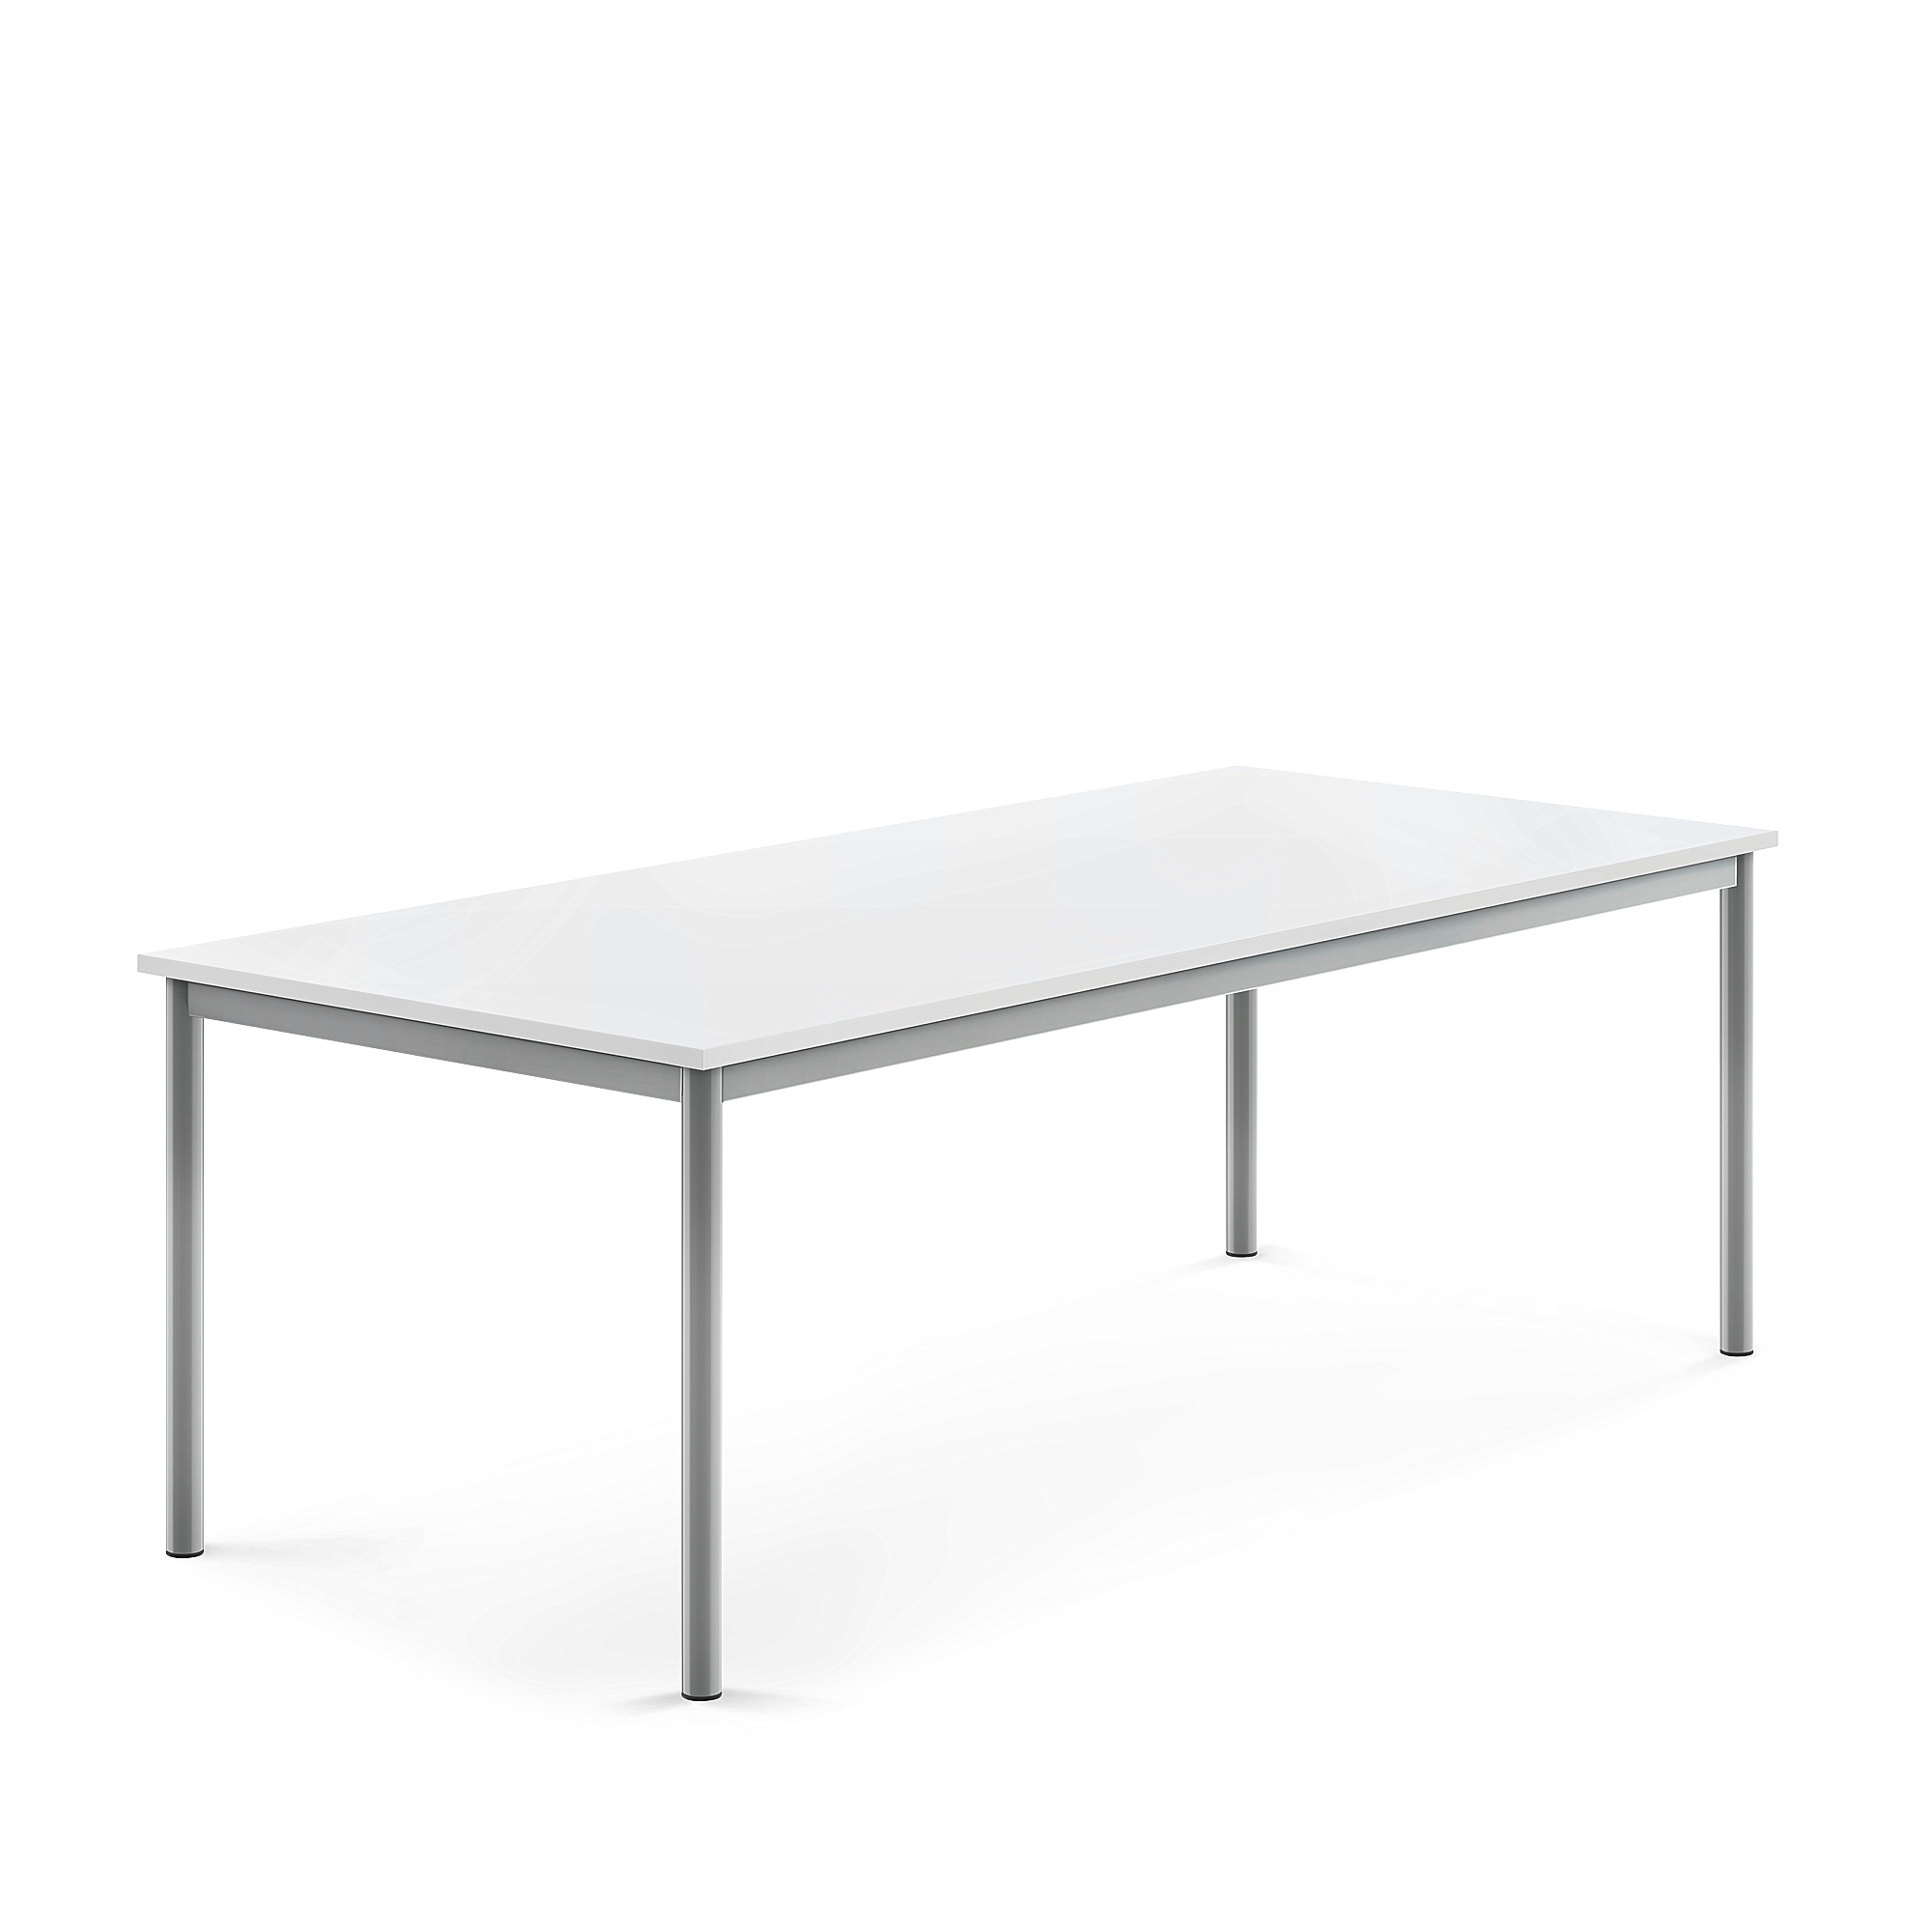 Stůl BORÅS, 1800x800x600 mm, stříbrné nohy, HPL deska, bílá